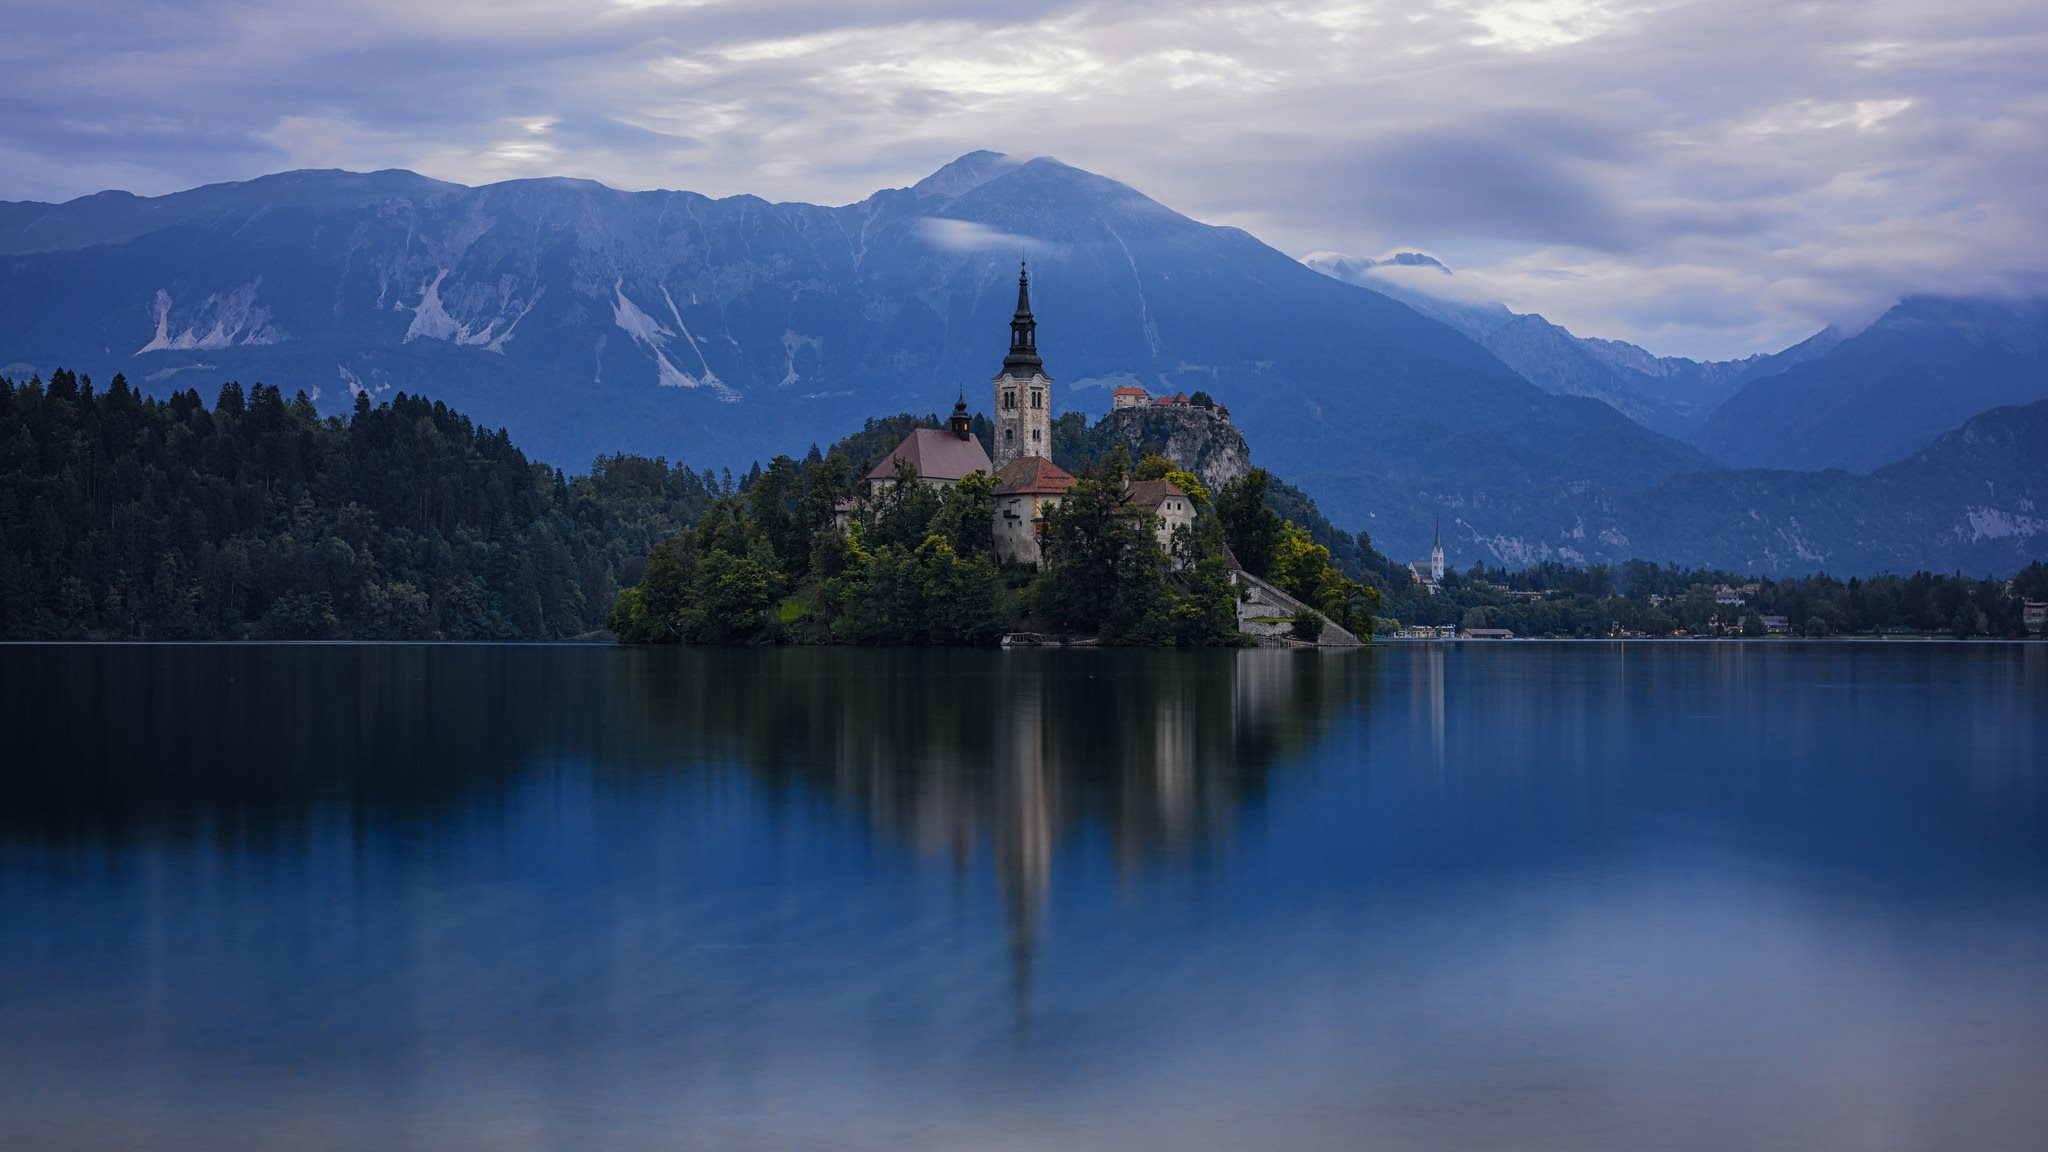 ダウンロード画像 ブレッド湖 スロベニア ジュリアンアルプス 画面の解像度 48x1152 壁紙デスクトップ上